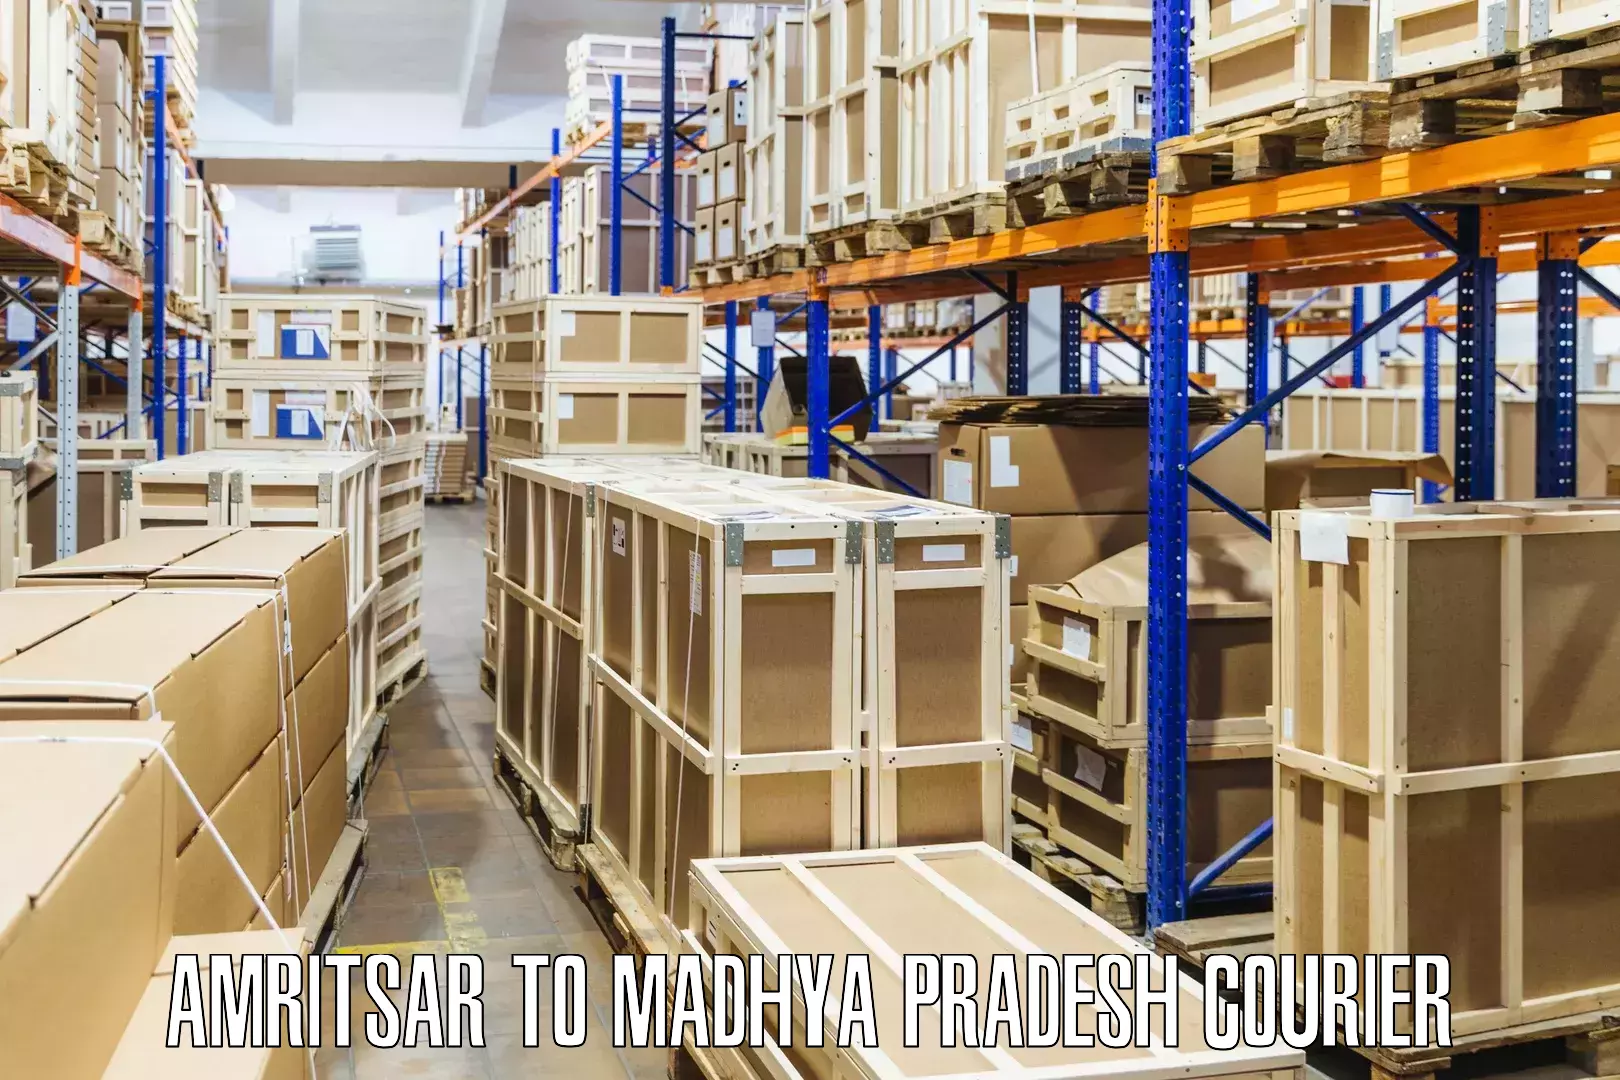 High-capacity shipping options Amritsar to Morena